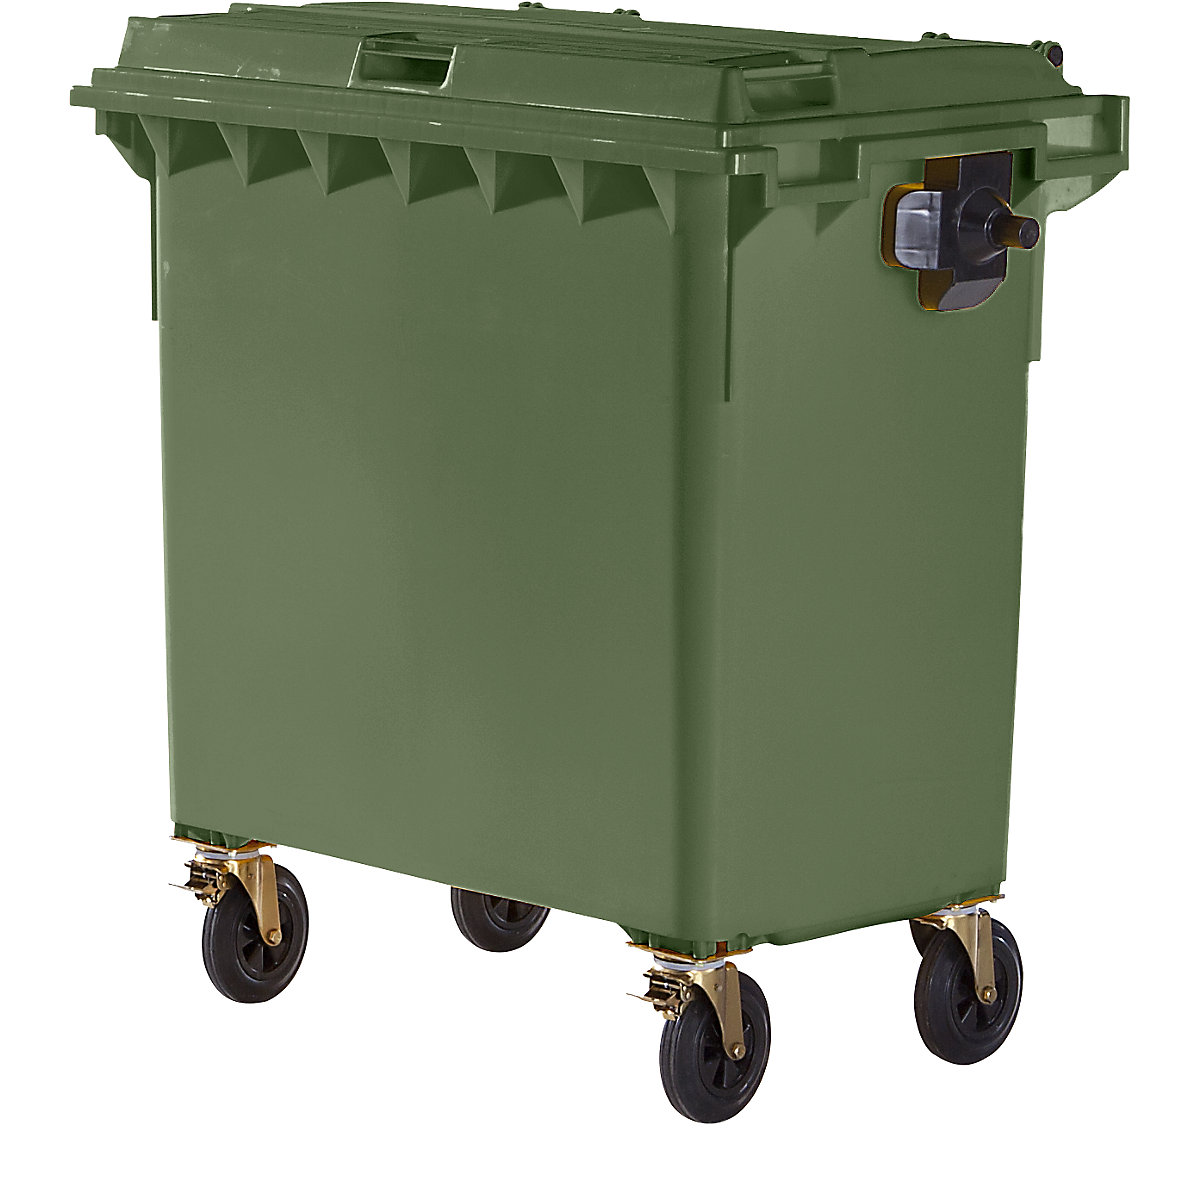 Pojemnik na odpady, z tworzywa, DIN EN 840